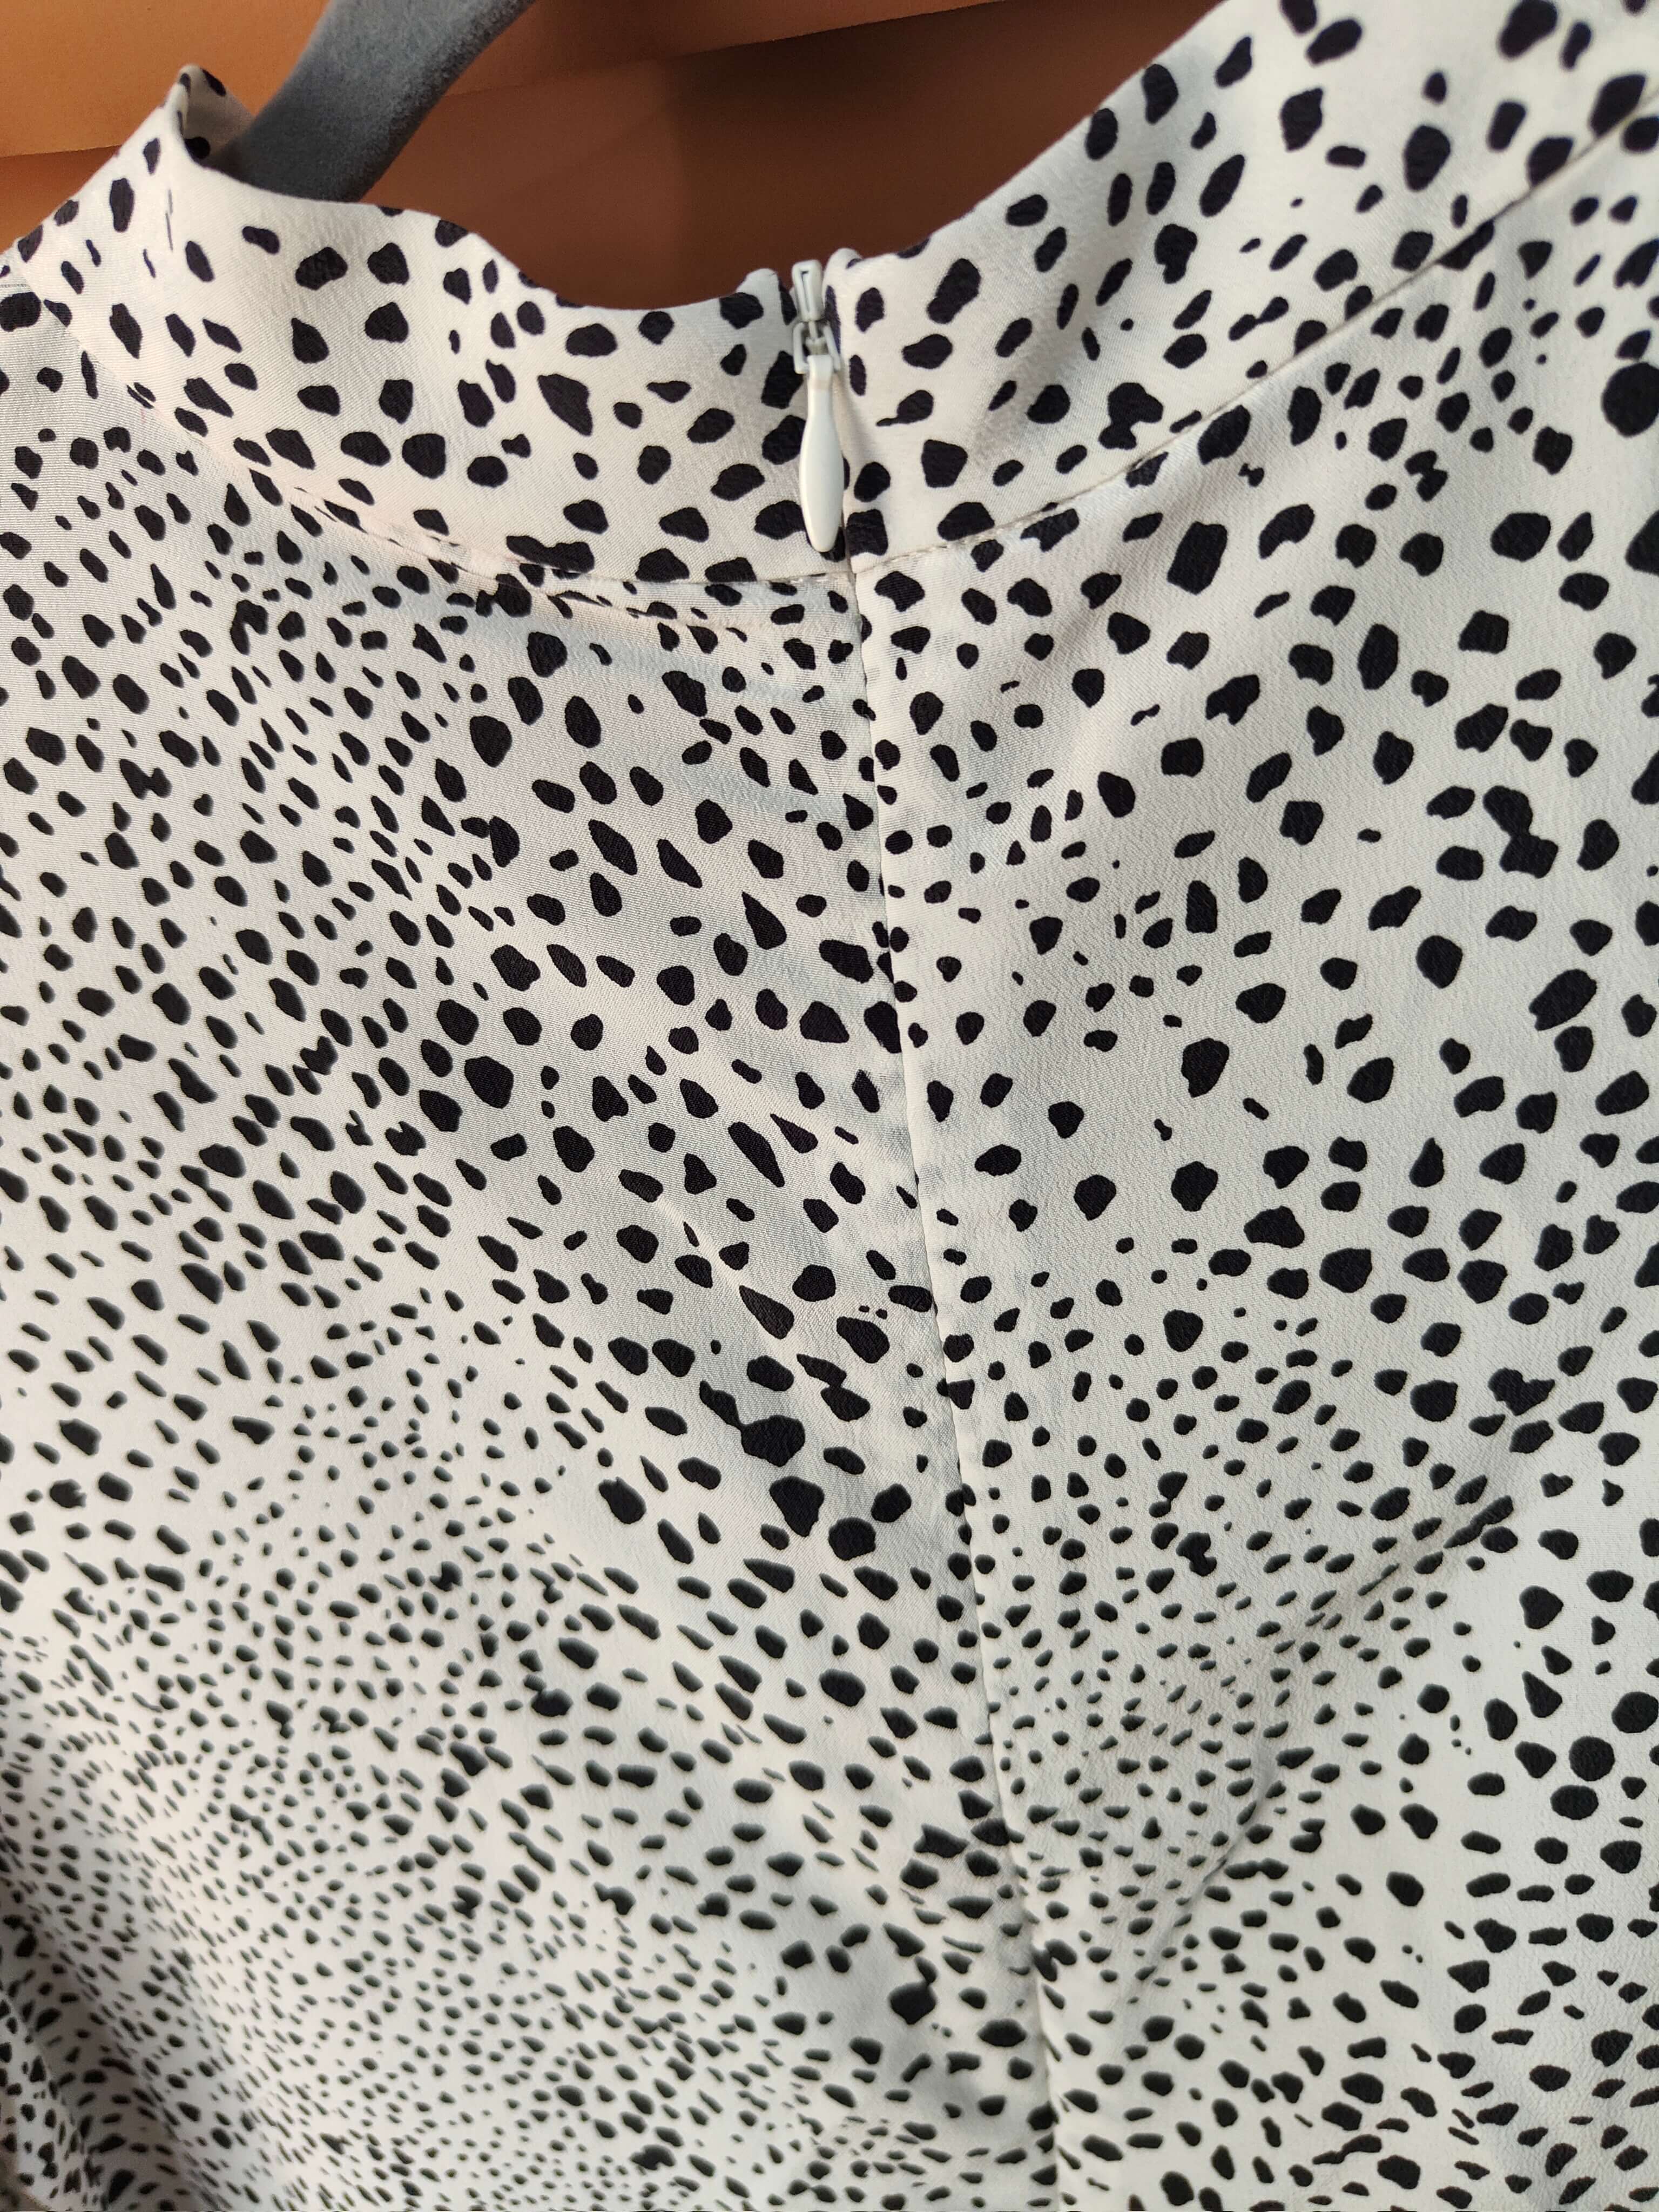 Großhandelsdamen bedruckte Leoparden-Seidenkragen-Hemdbluse mit Rundhalsausschnitt in loser Schüttung